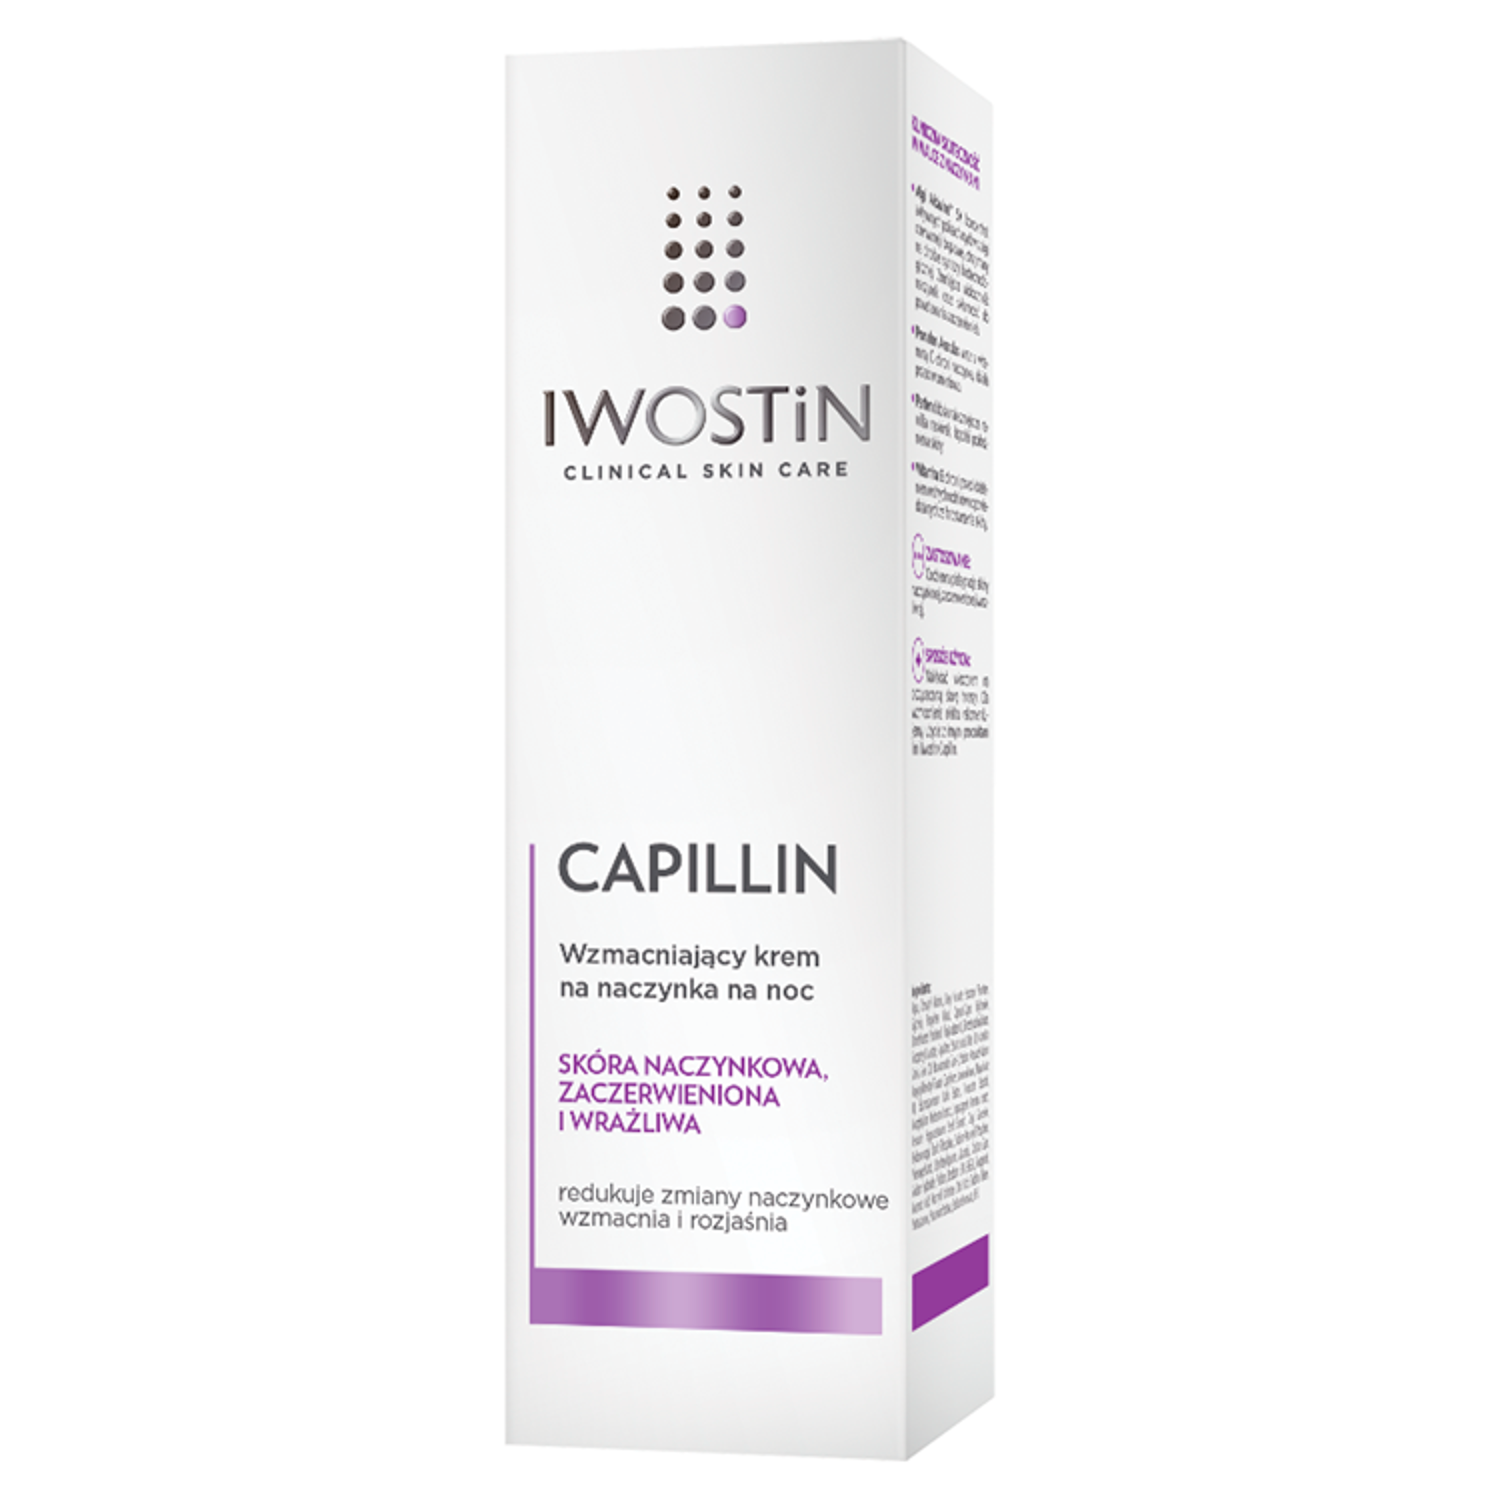 Iwostin Capillin укрепляющий крем для капилляров лица на ночь, 40 мл